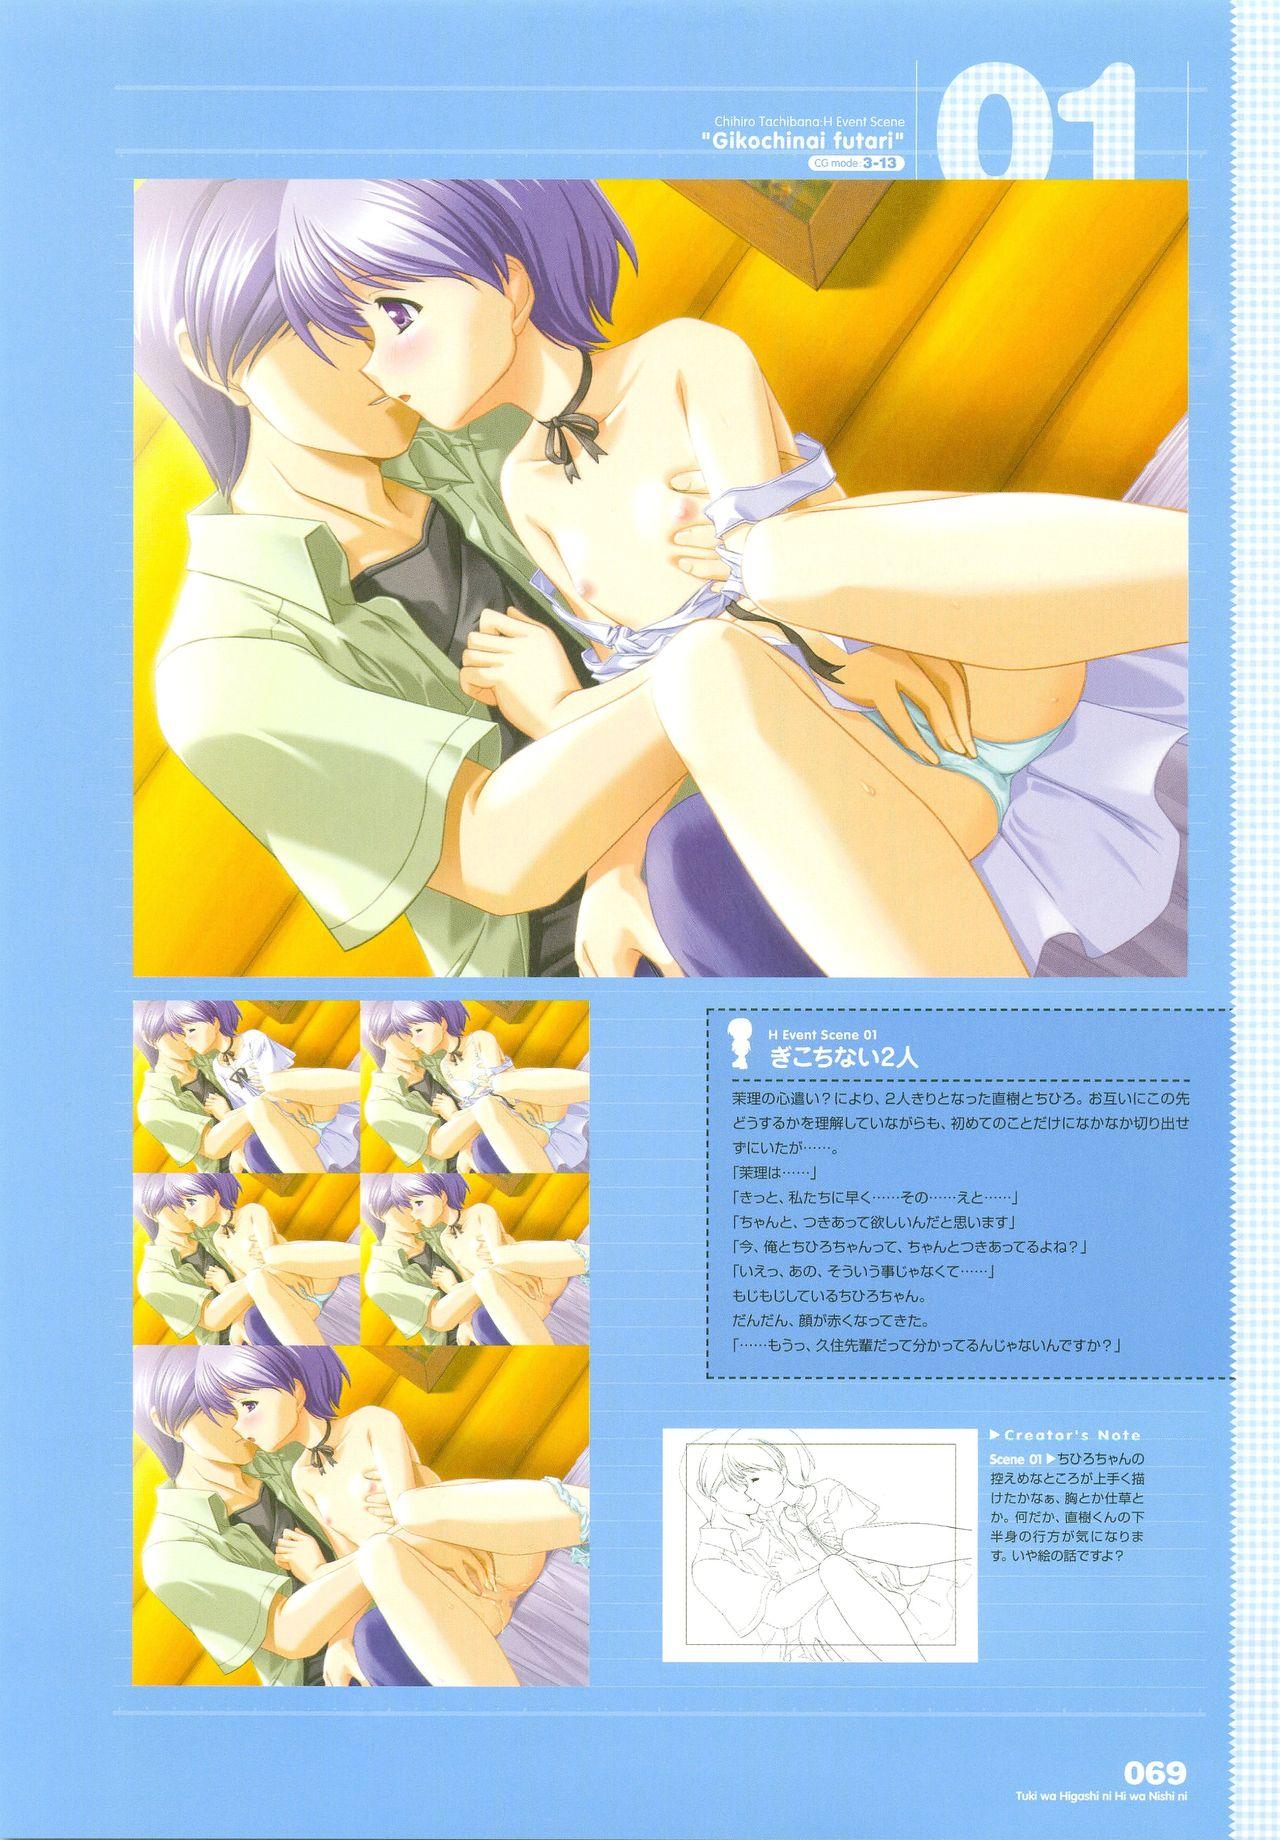 Tsuki wa Higashi ni Hi wa Nishi ni - Operation Sanctuary - Visual Fan Book Shokai Ban 90